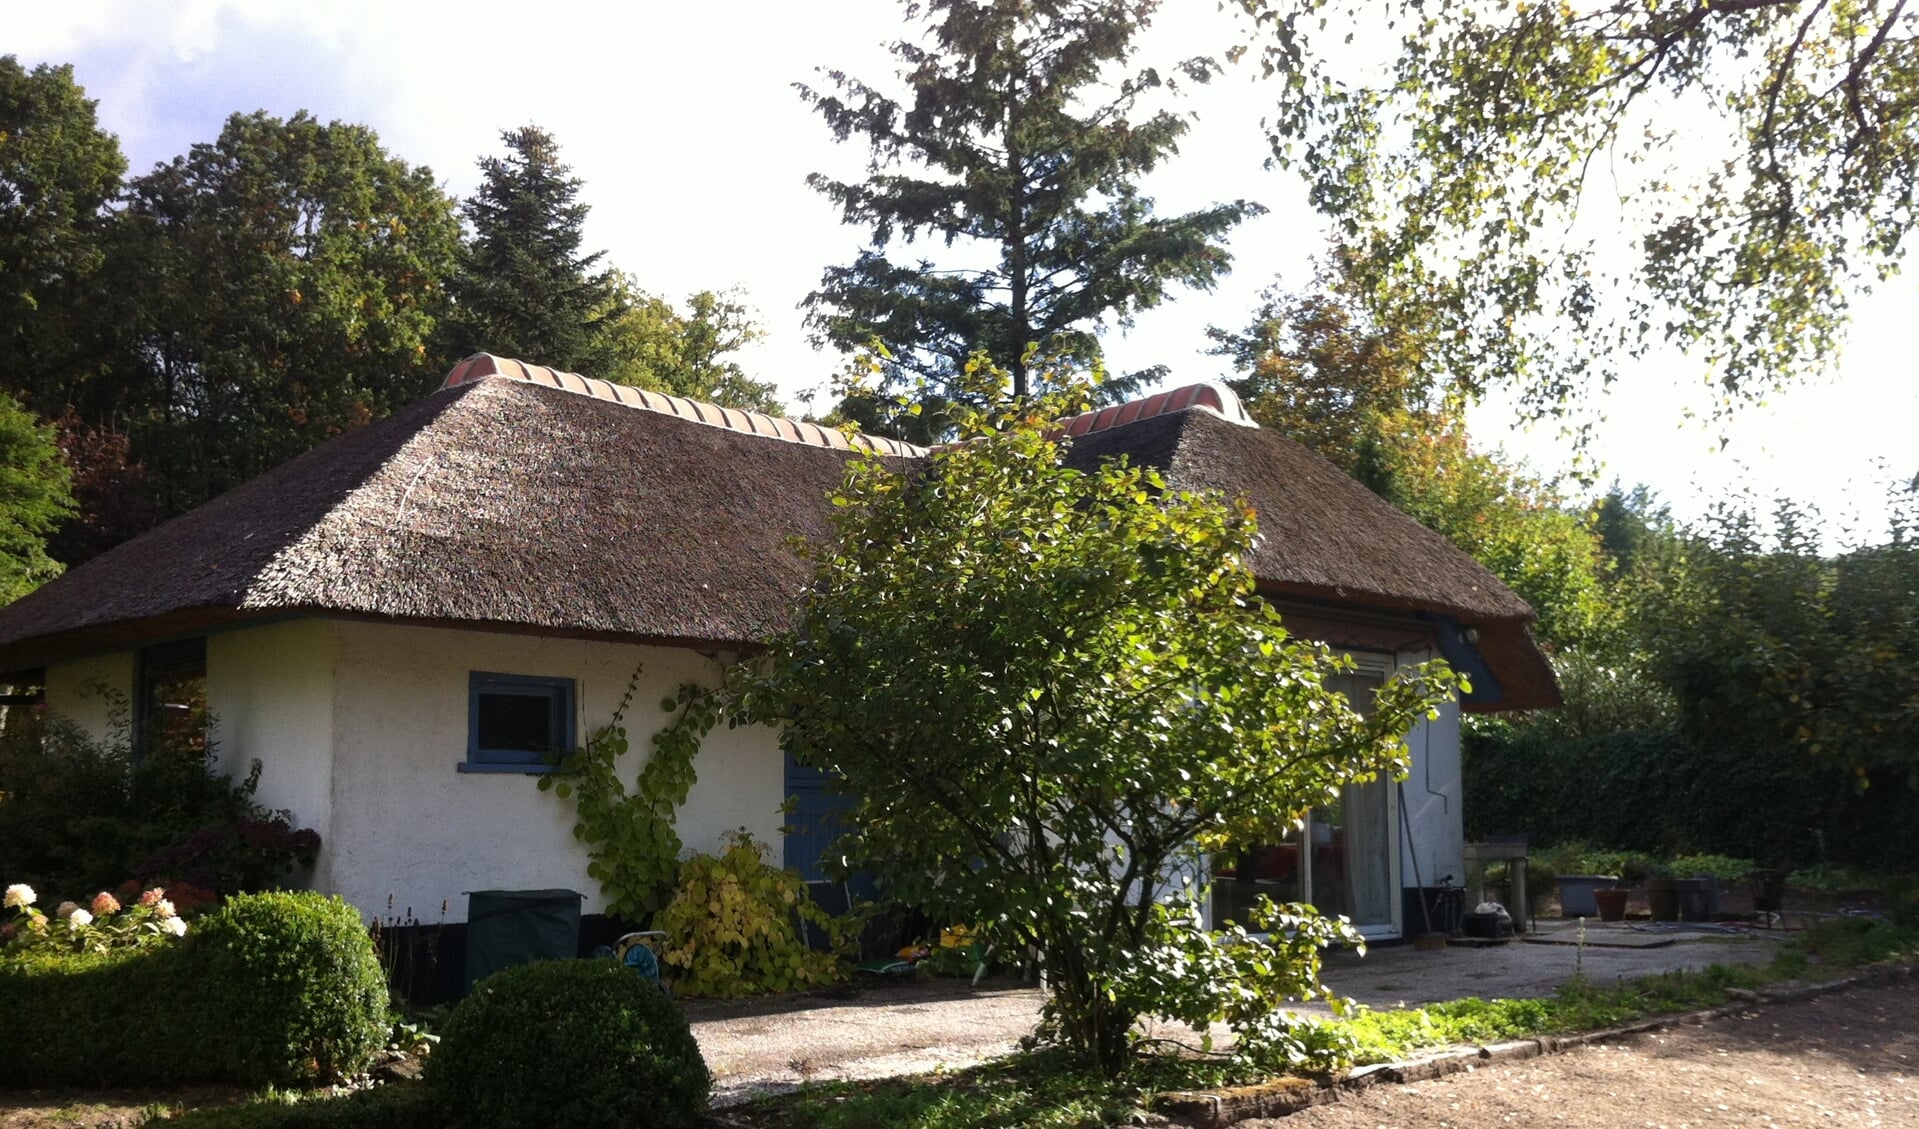 Eén van de woningen op Nieuw Wildenburg in de kenmerkende stijl: wit met een rieten dak met een gemetselde pannennok.